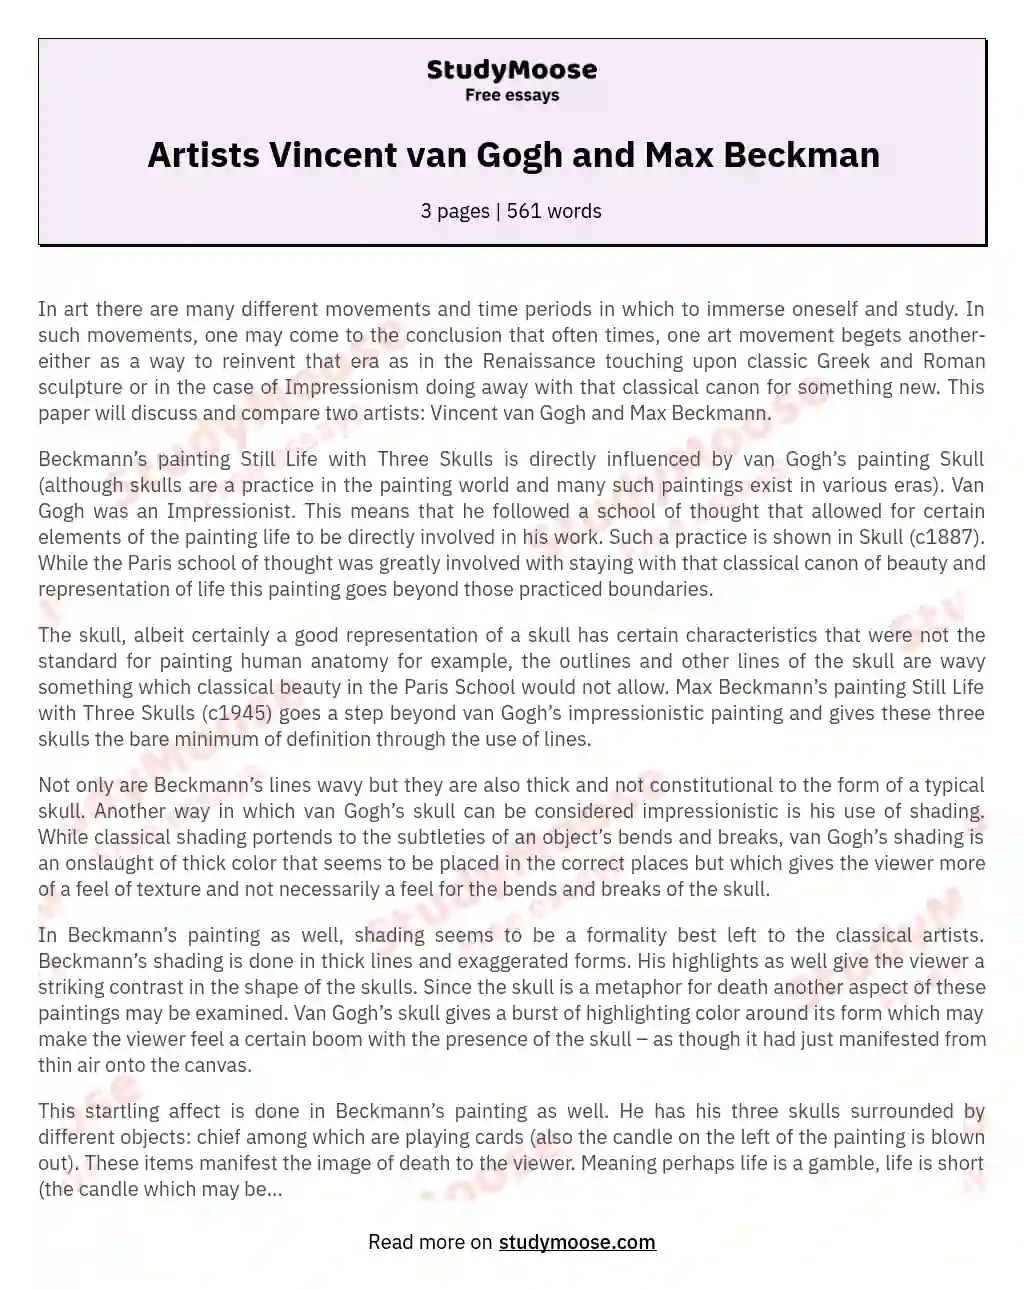 Artists Vincent van Gogh and Max Beckman essay